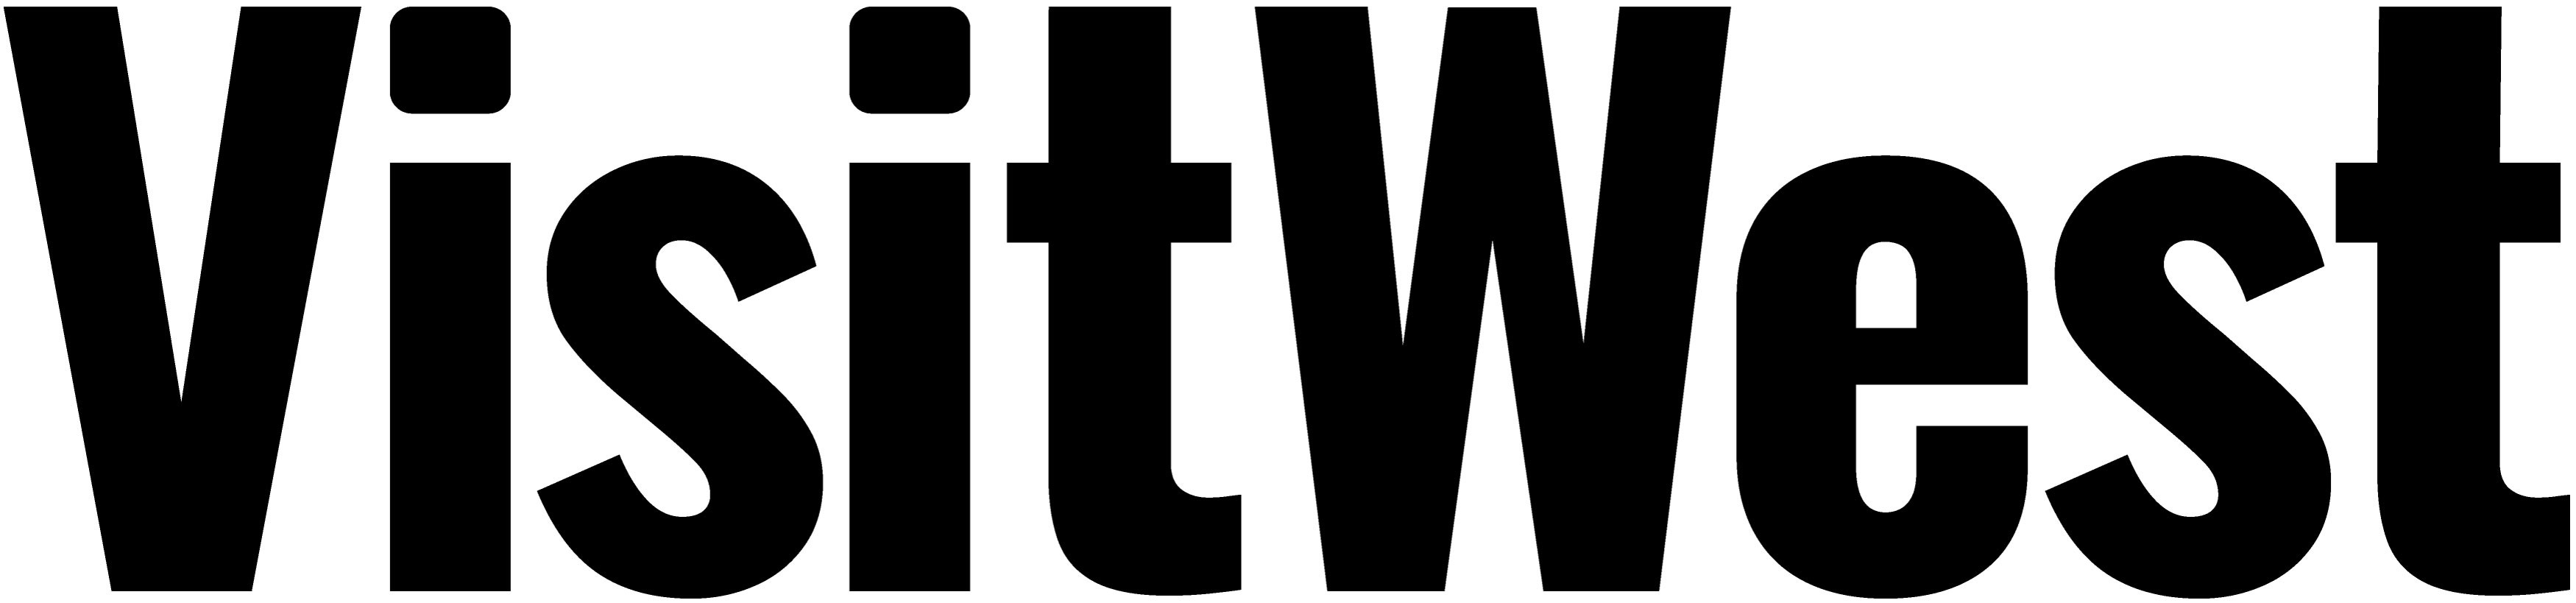 logo for Visit West